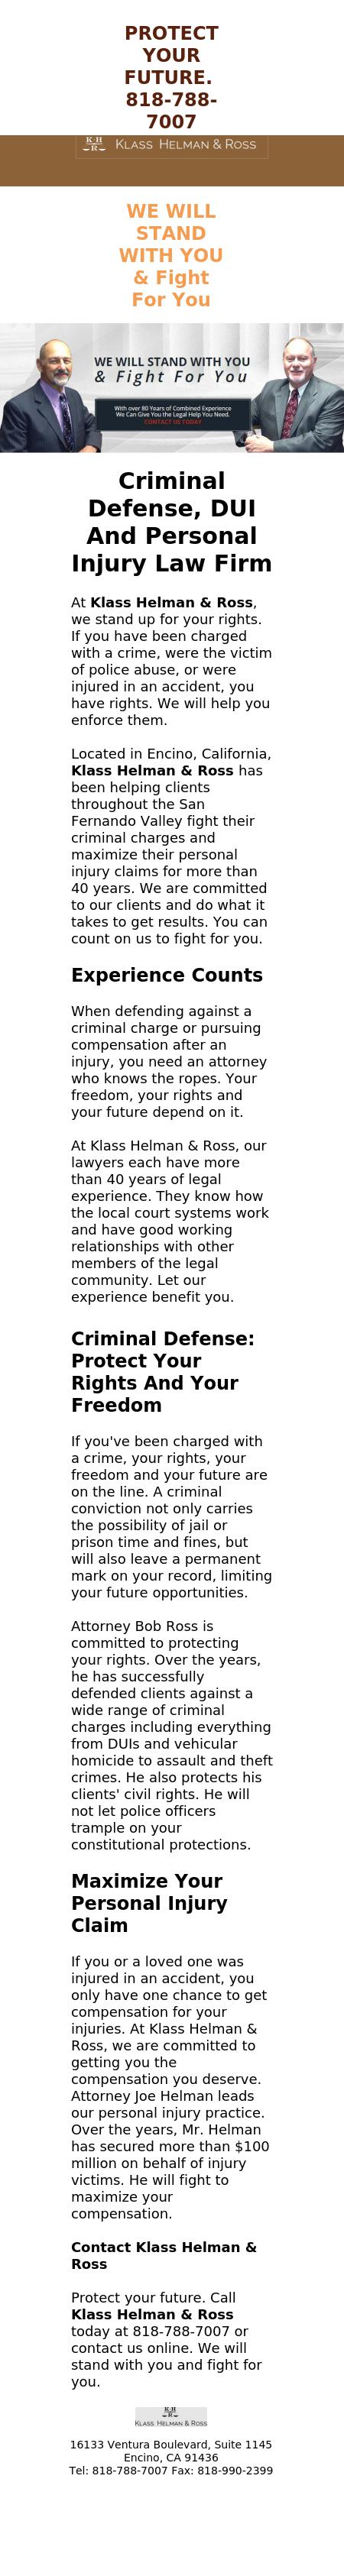 Klass Helman & Ross - Encino CA Lawyers